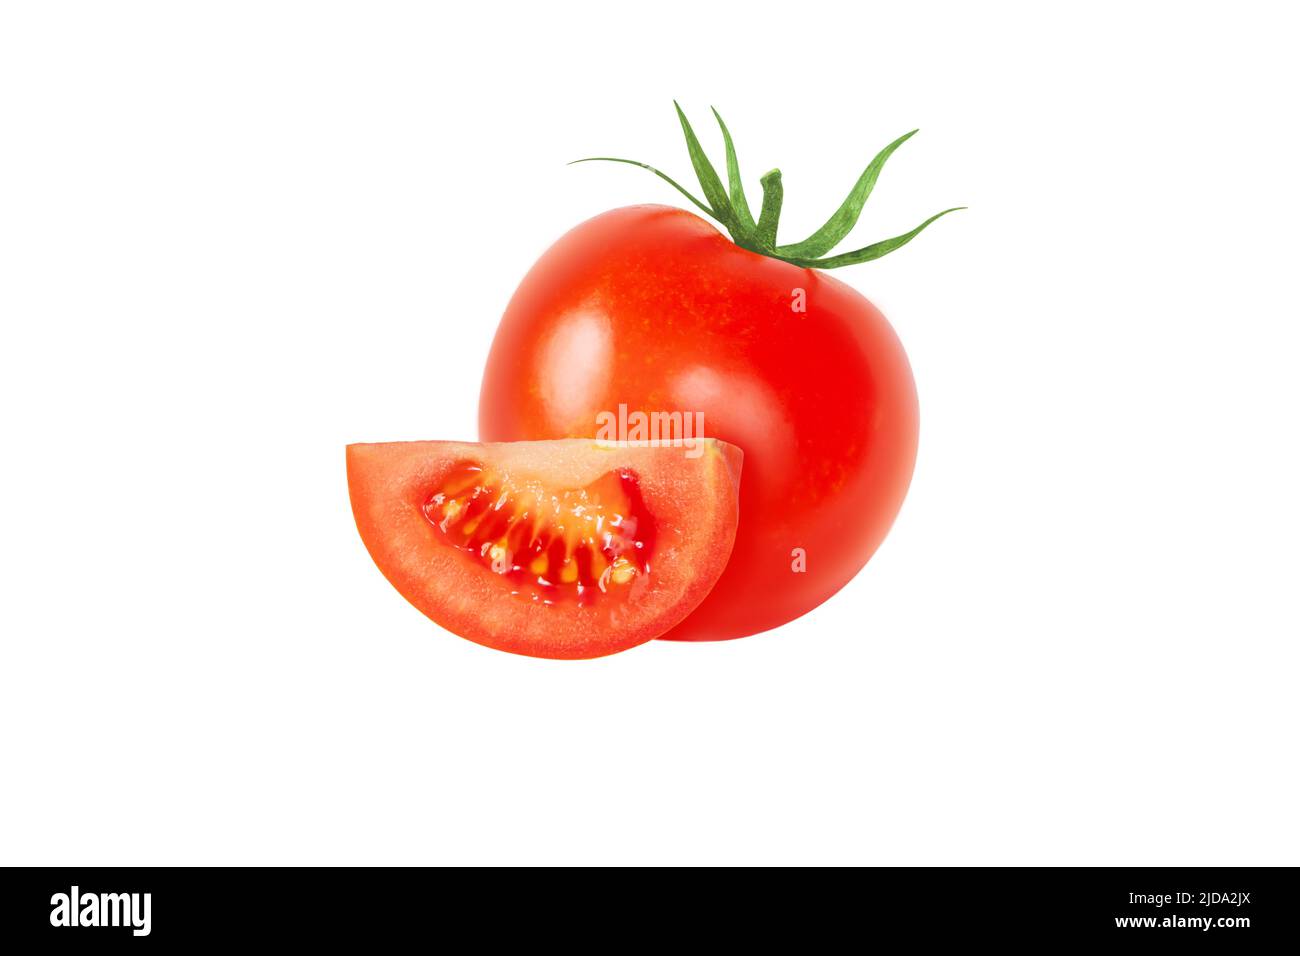 Tomato red whole vegetable and slice isolated on white background. Solanum lycopersicum ripe fruit. Stock Photo